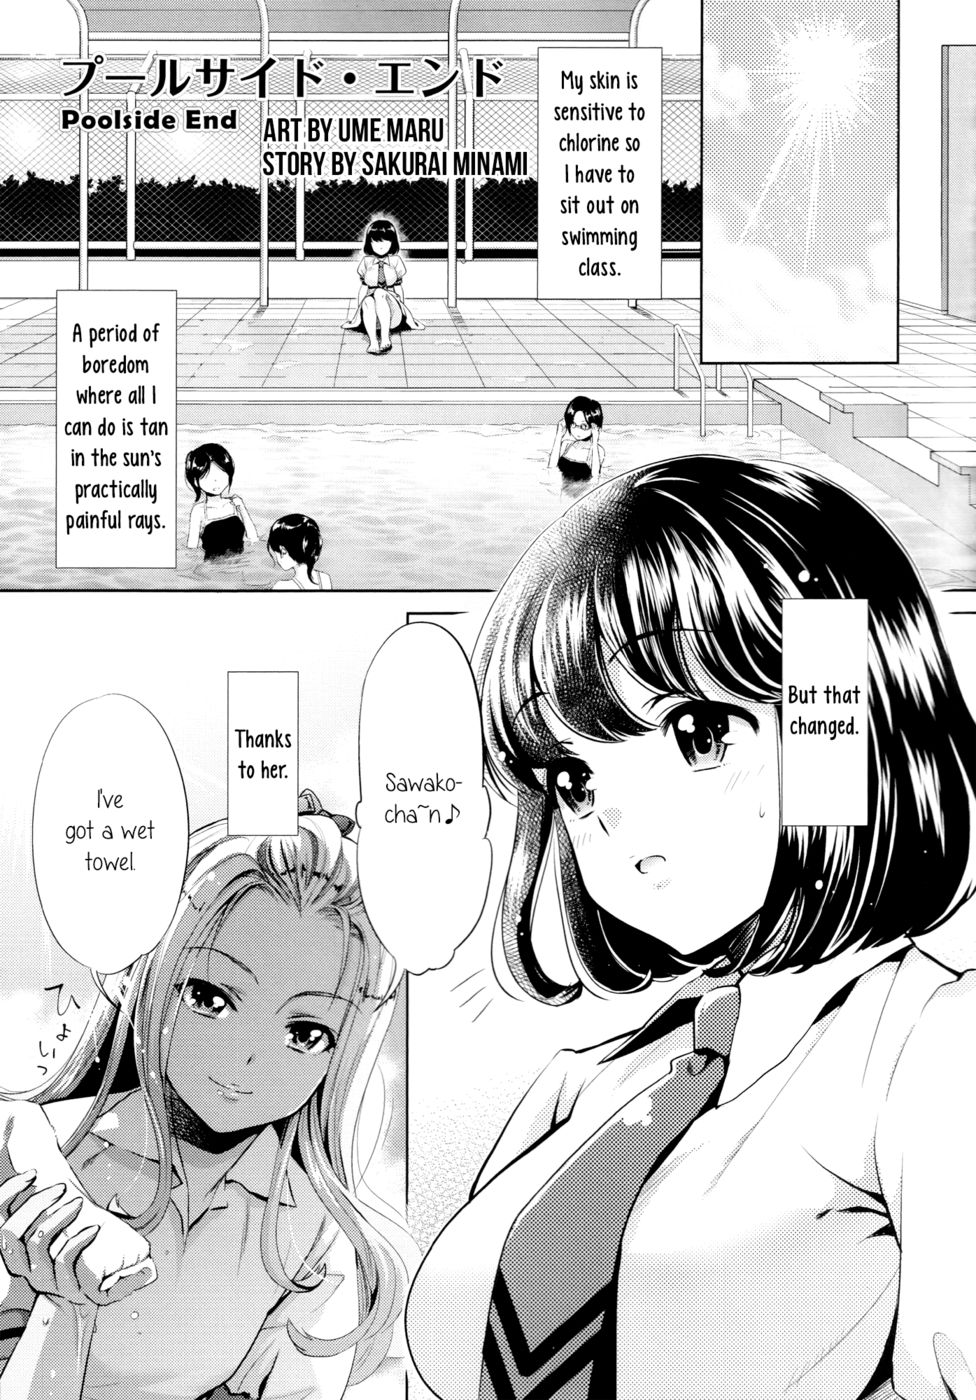 Hentai Manga Comic-Poolside End-Read-1